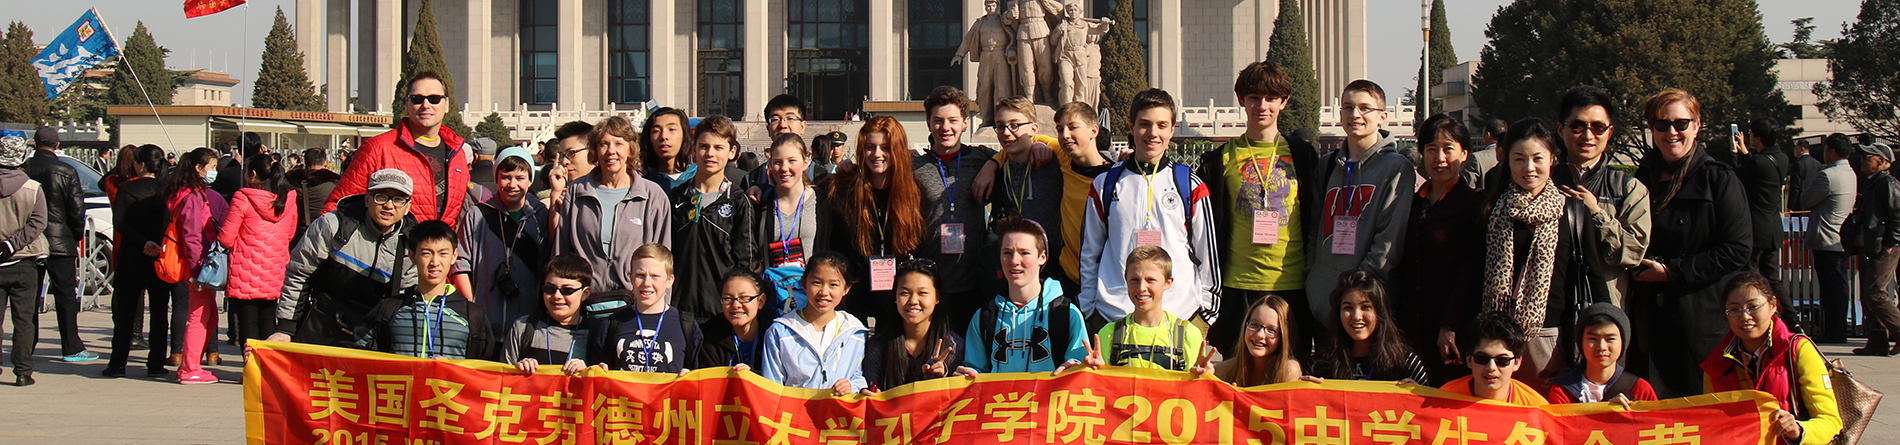 טיול סין בכיתה ח ', 2015